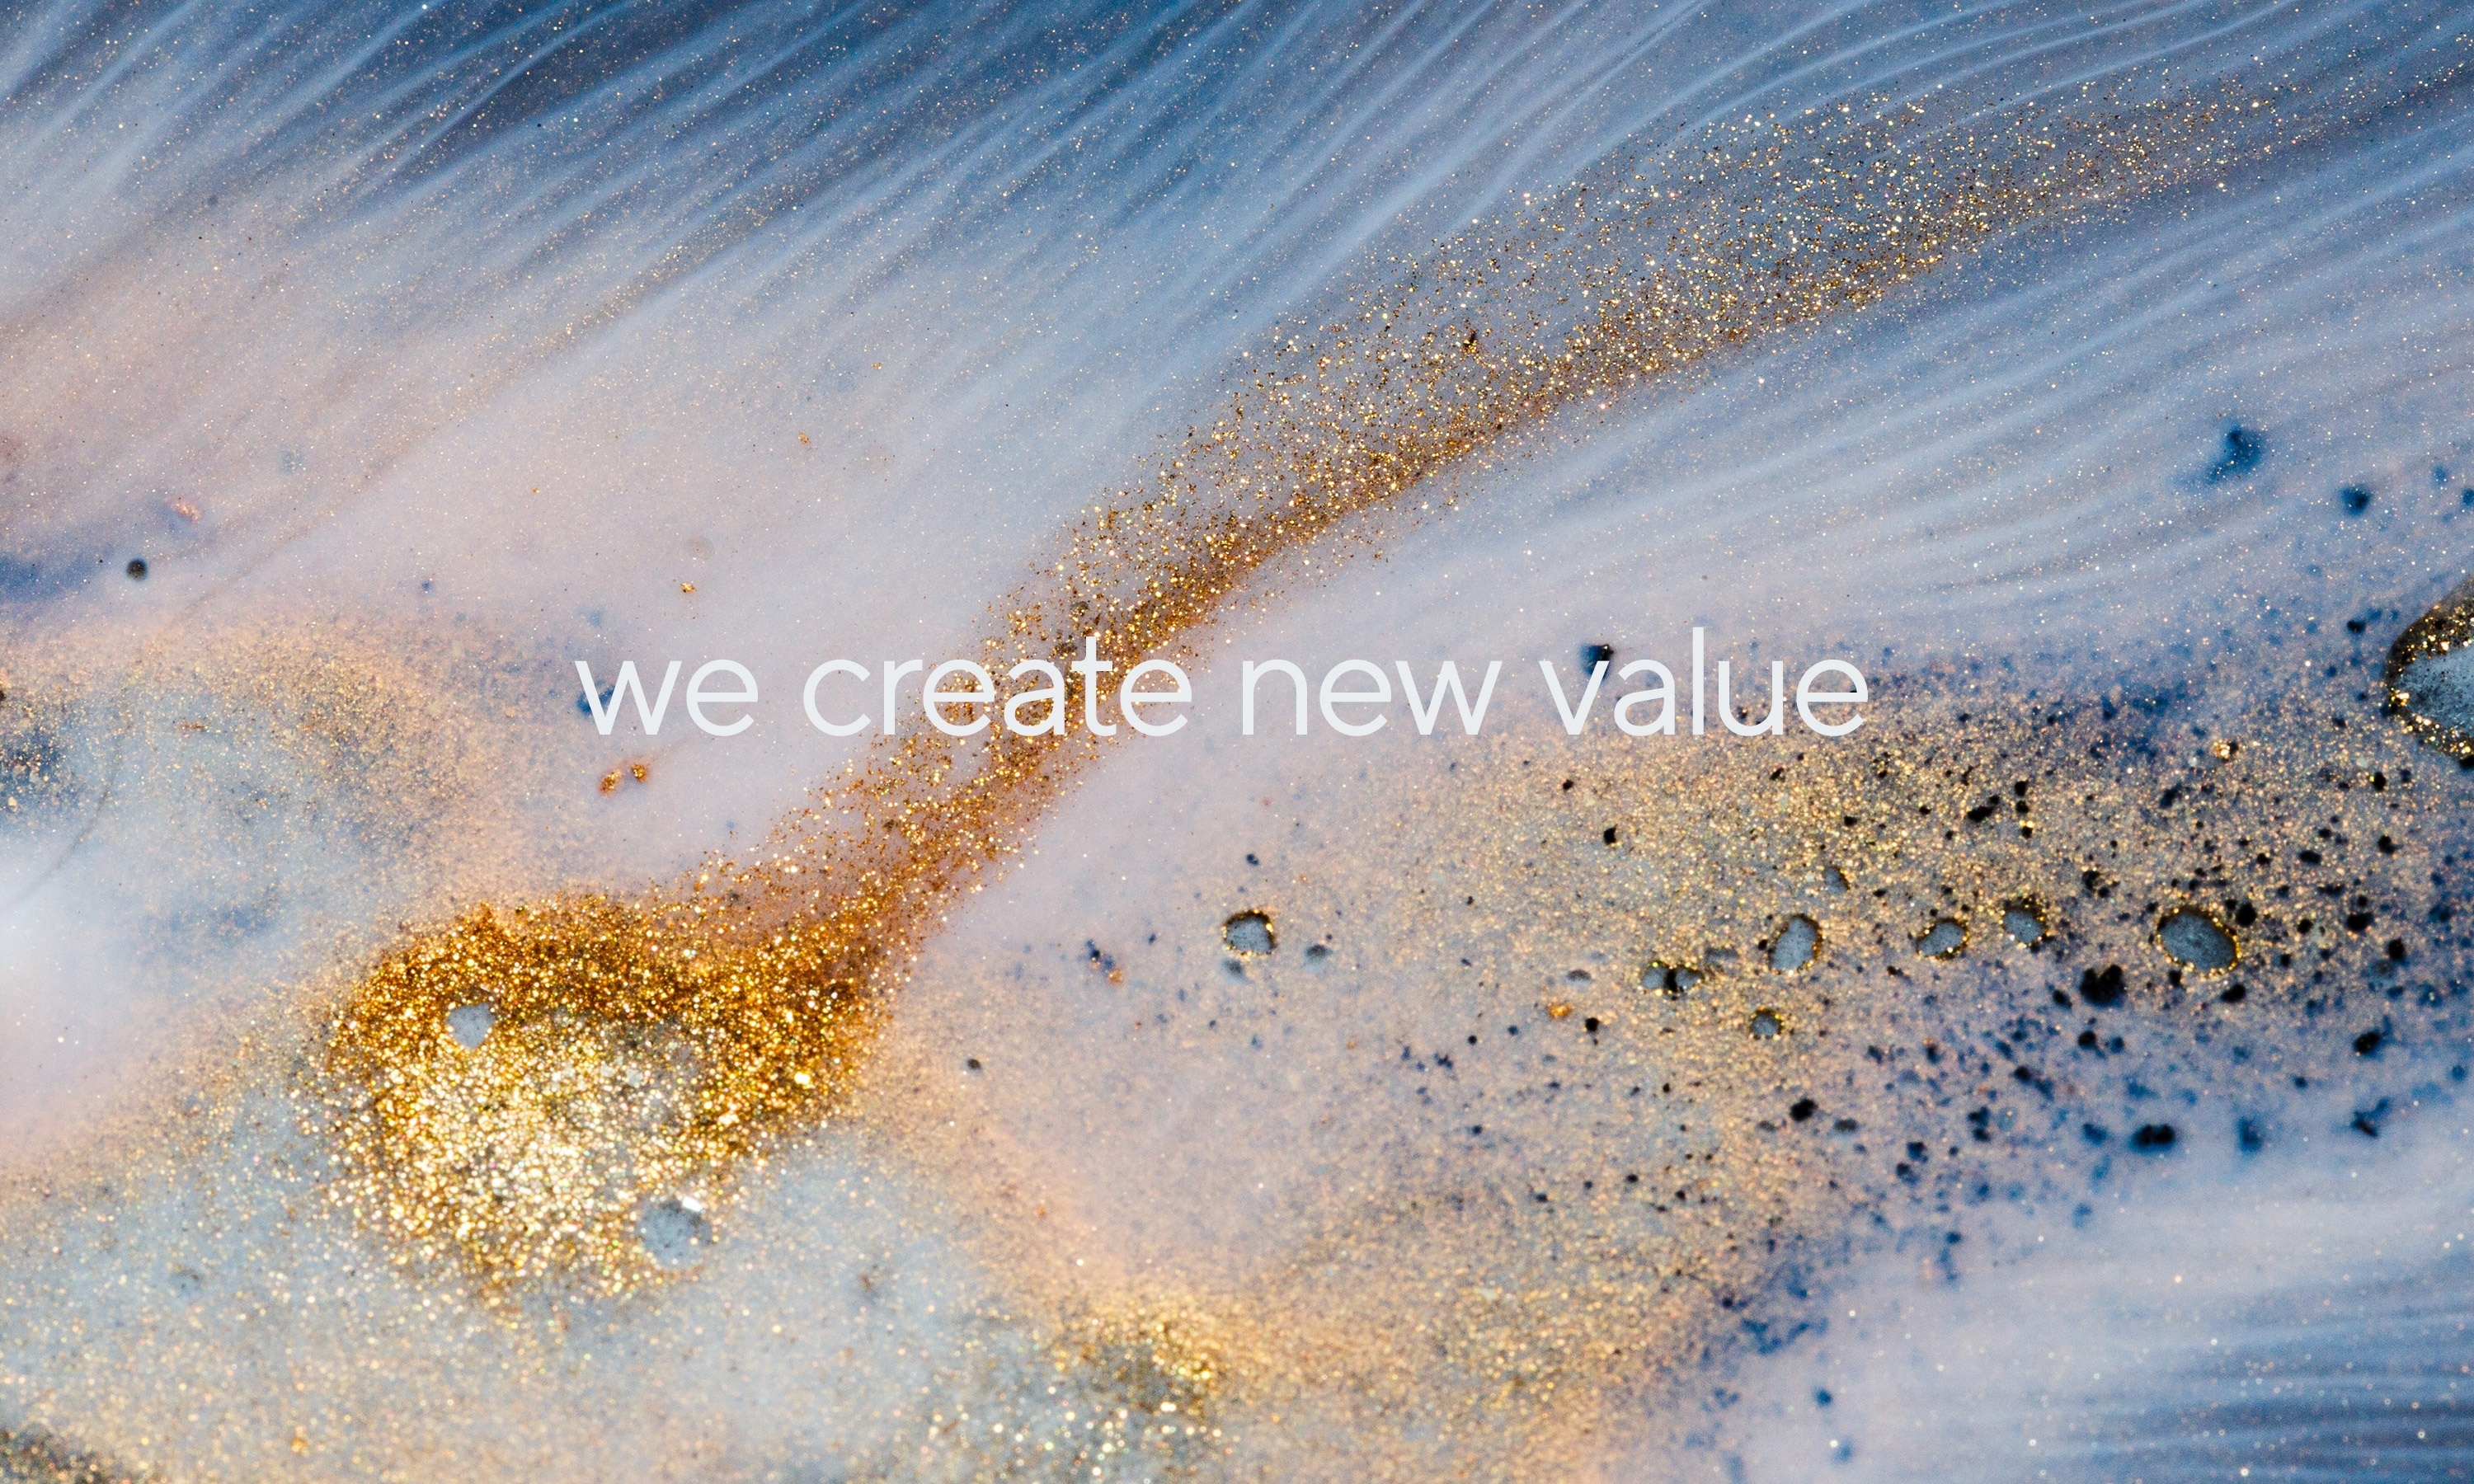 Iww we create new value image